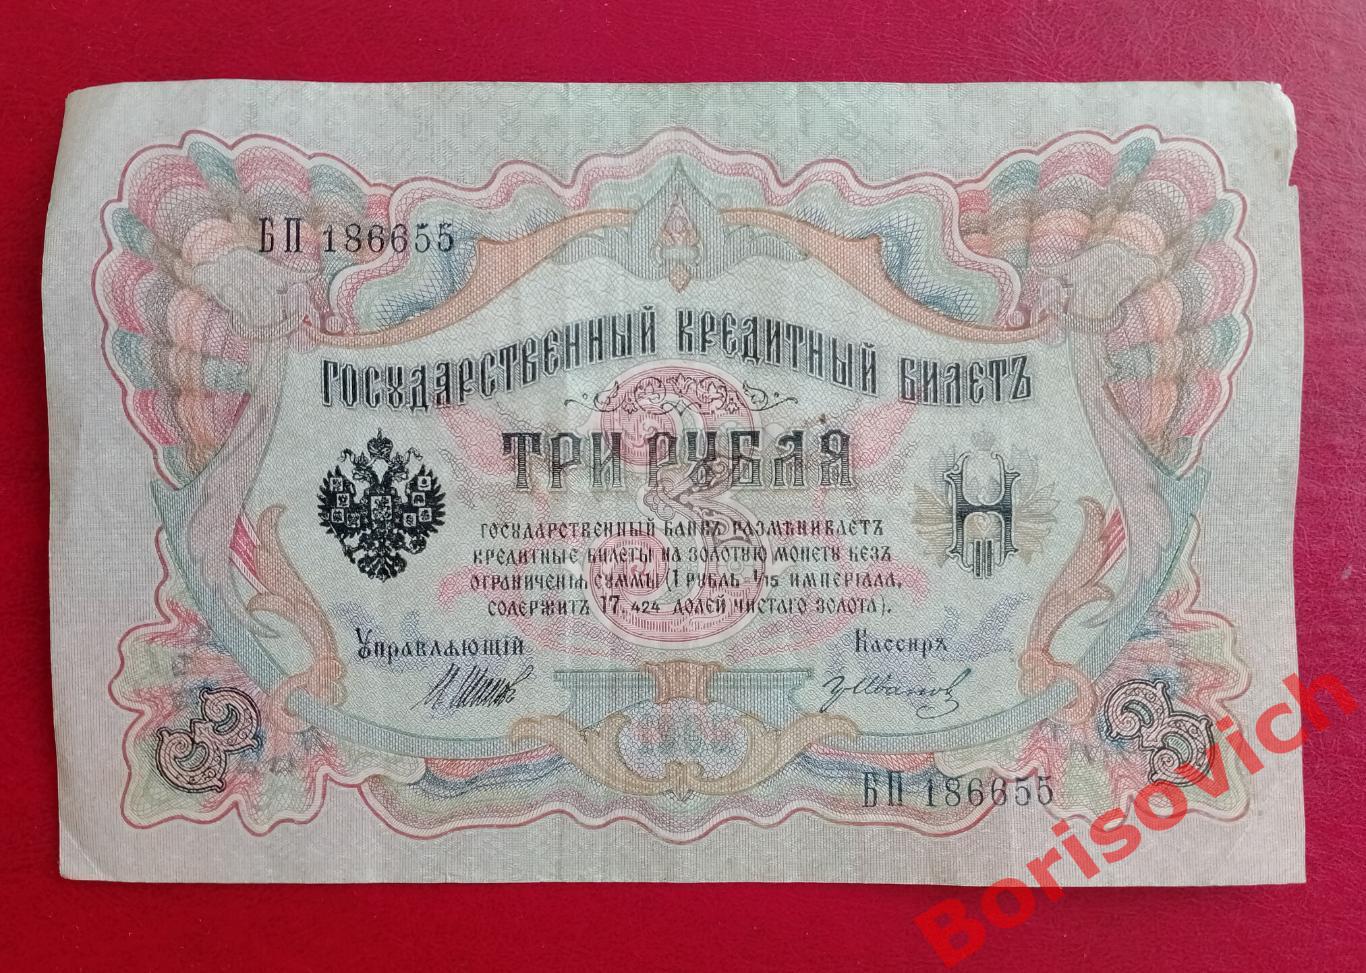 Три рубля 1905 г Управляющий ШИПОВ Кассир ИВАНОВ